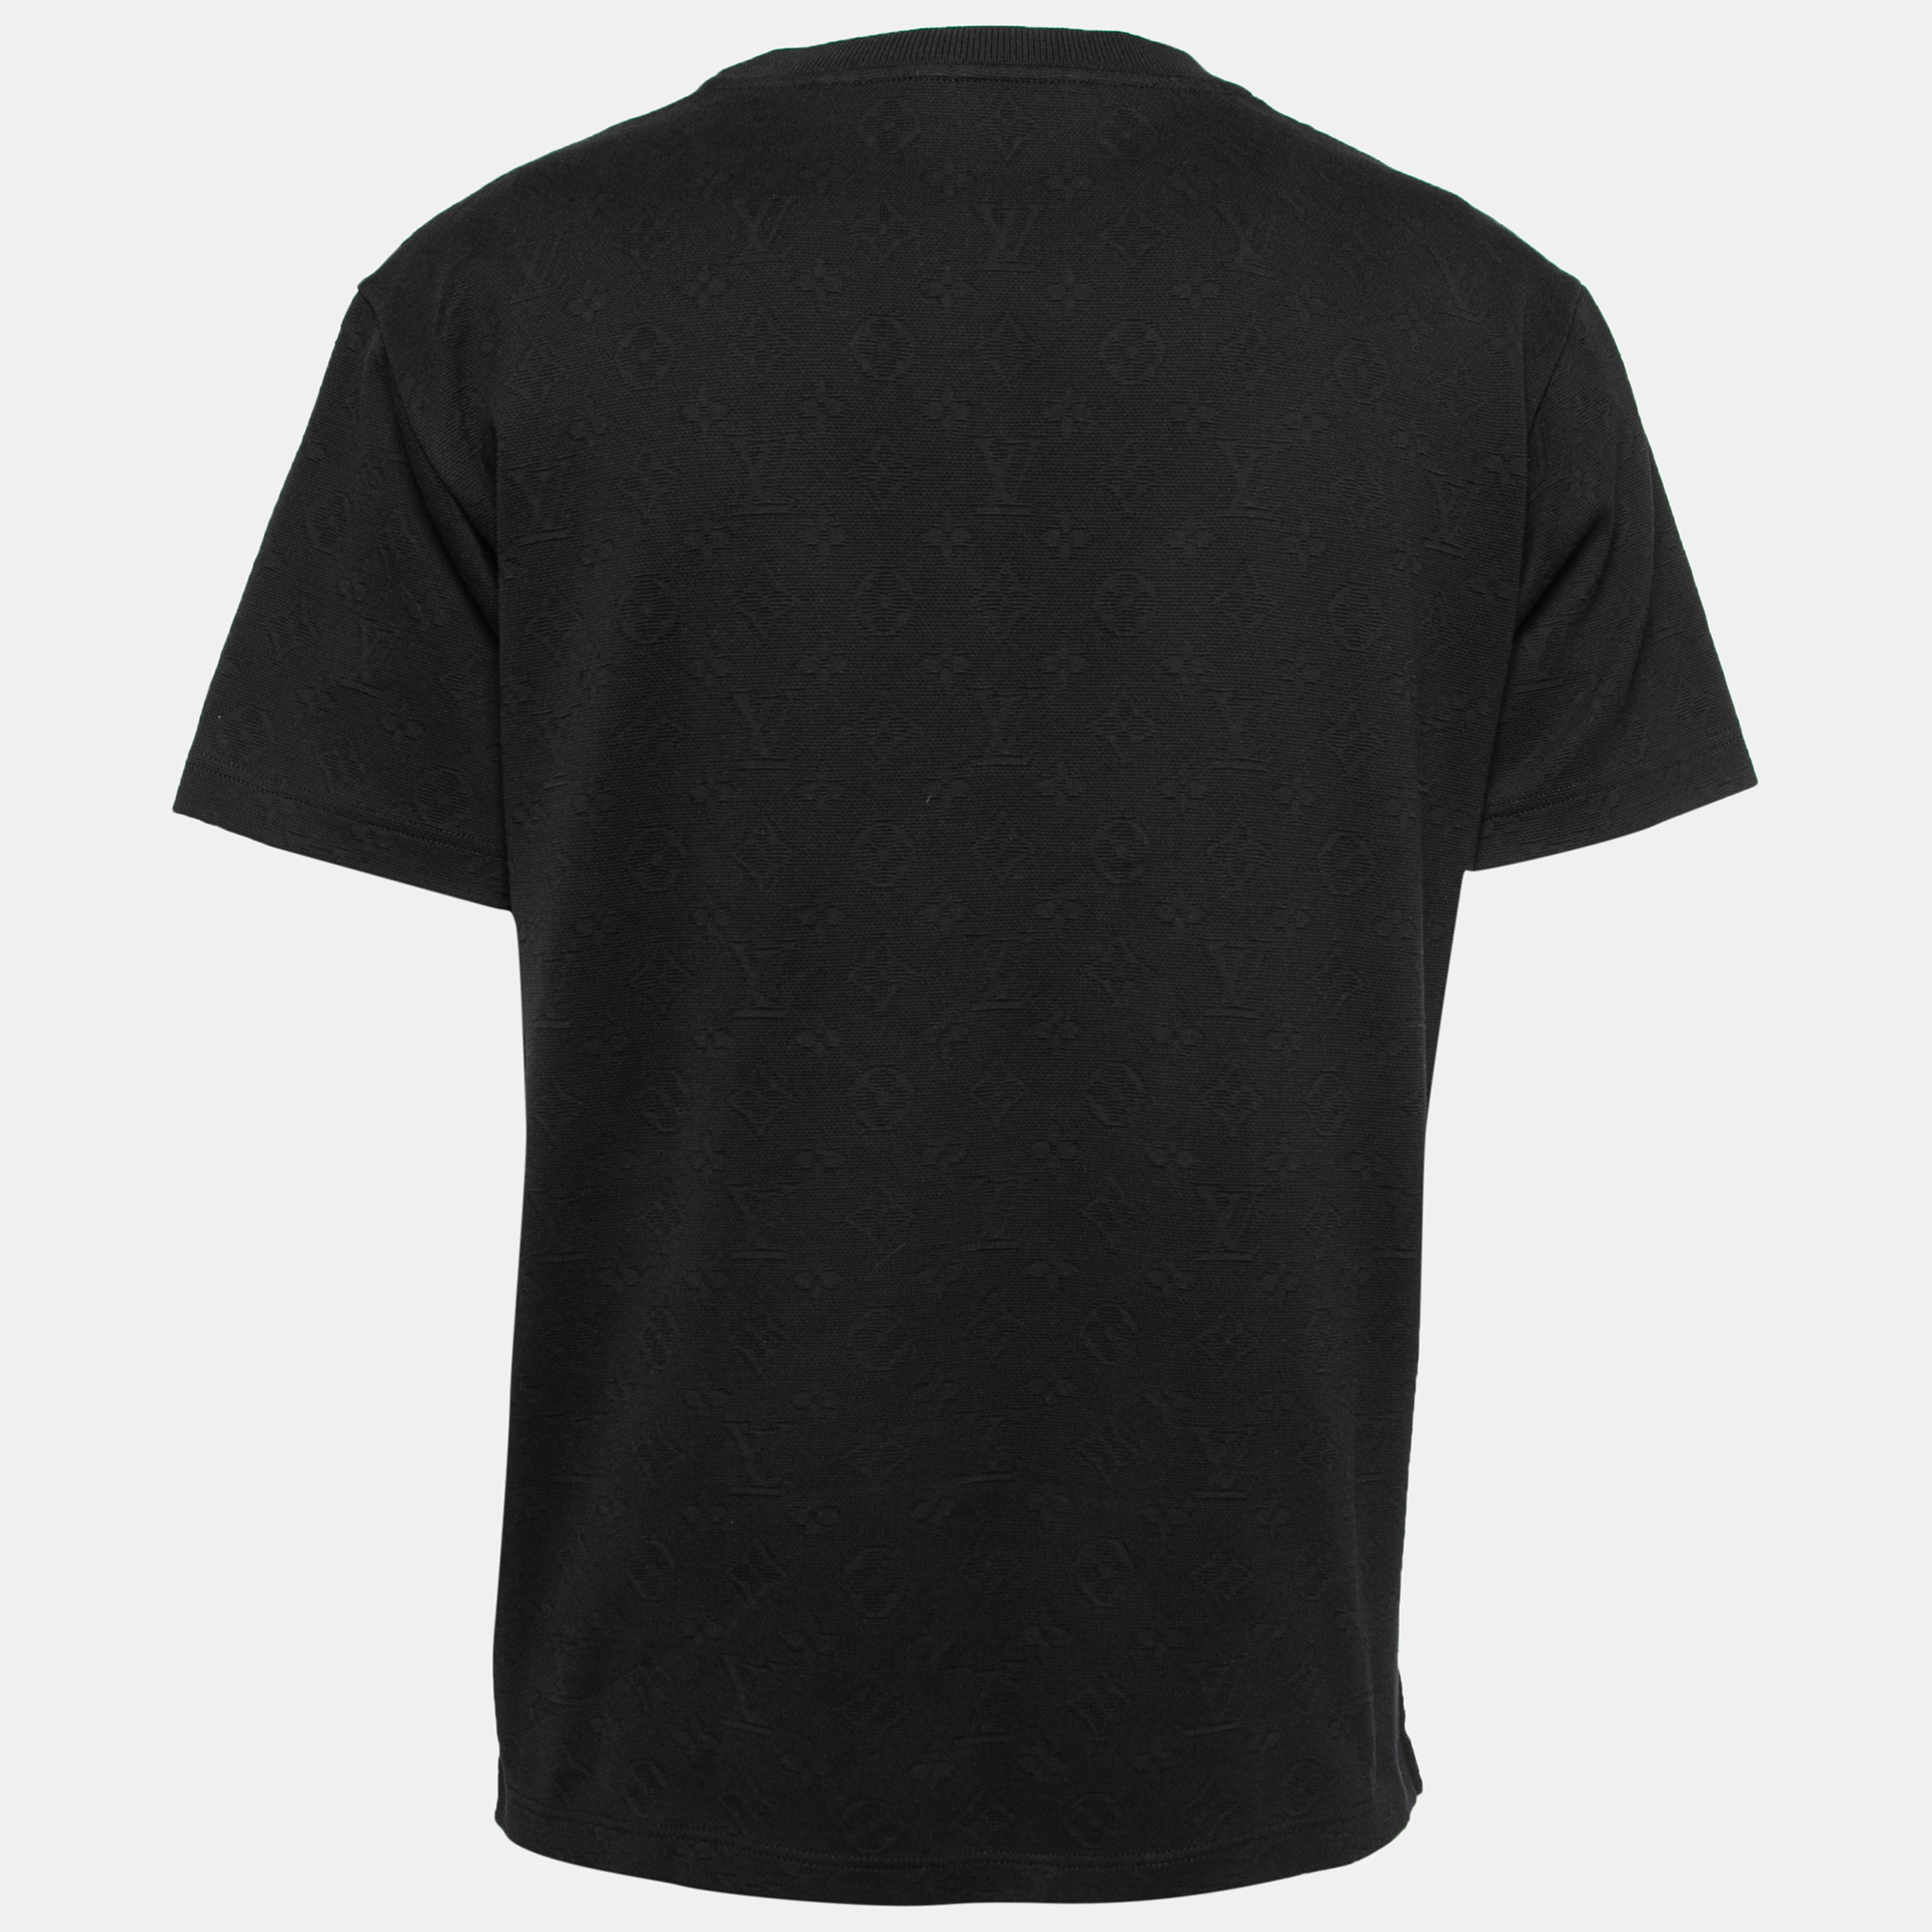 

Louis Vuitton Black Monogram Jacquard Cotton Crewneck T-Shirt